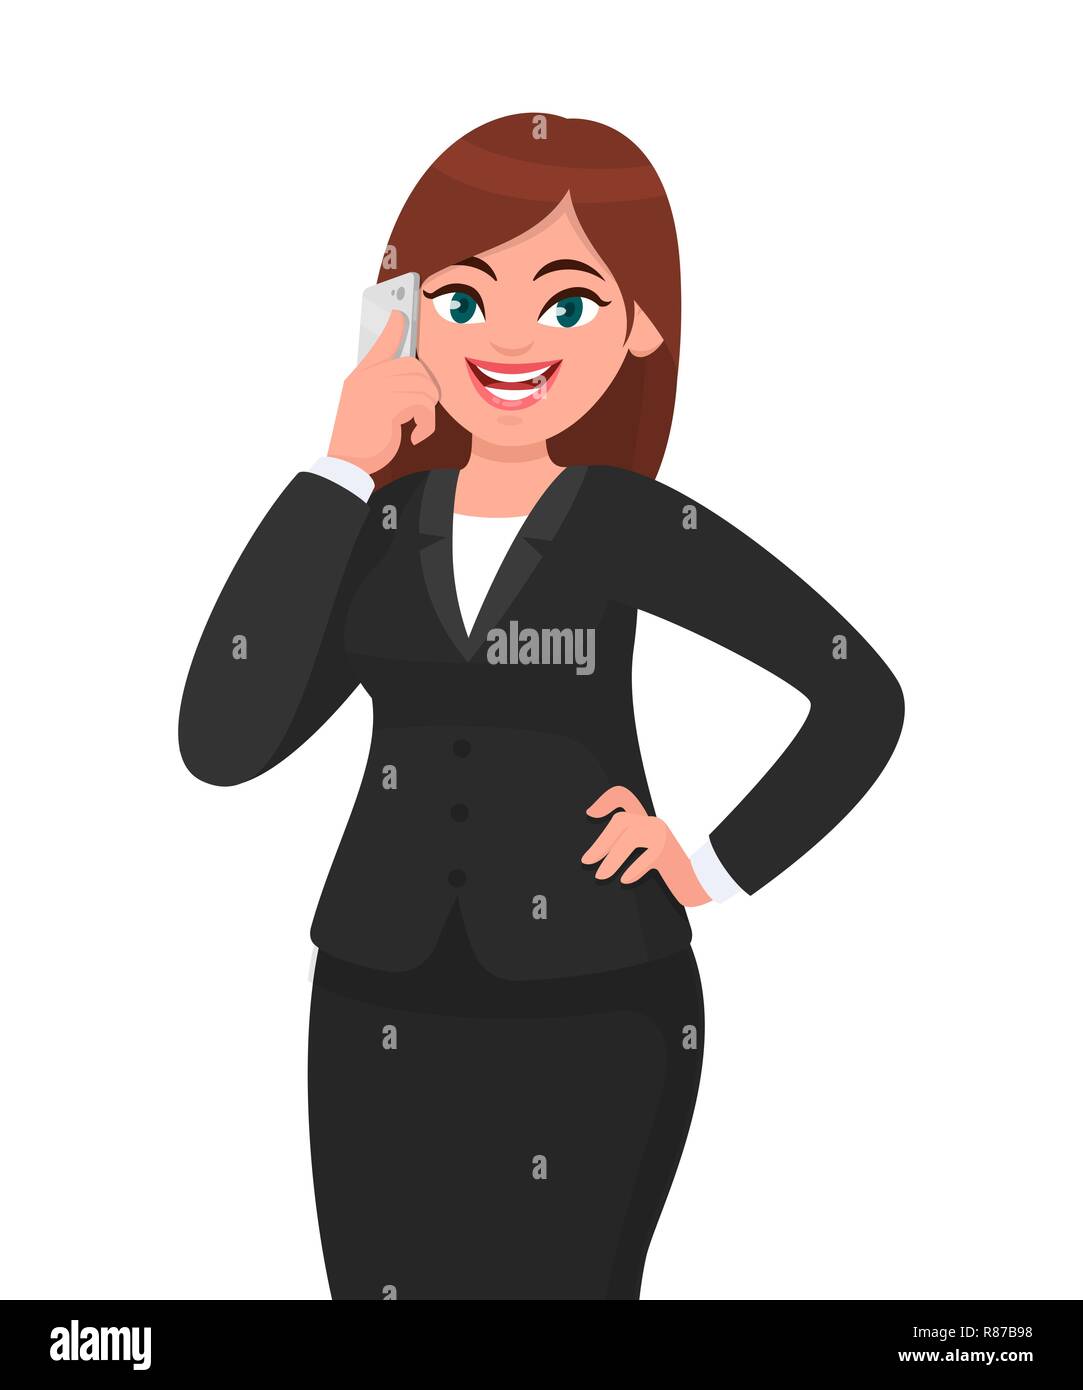 Glückliche Geschäftsfrau, die am Telefon spricht, die Hand an der Hüfte hält. Telekommunikation, Technologie und Mobile- oder Smartphone-Konzeptdarstellung im Vektor. Stock Vektor